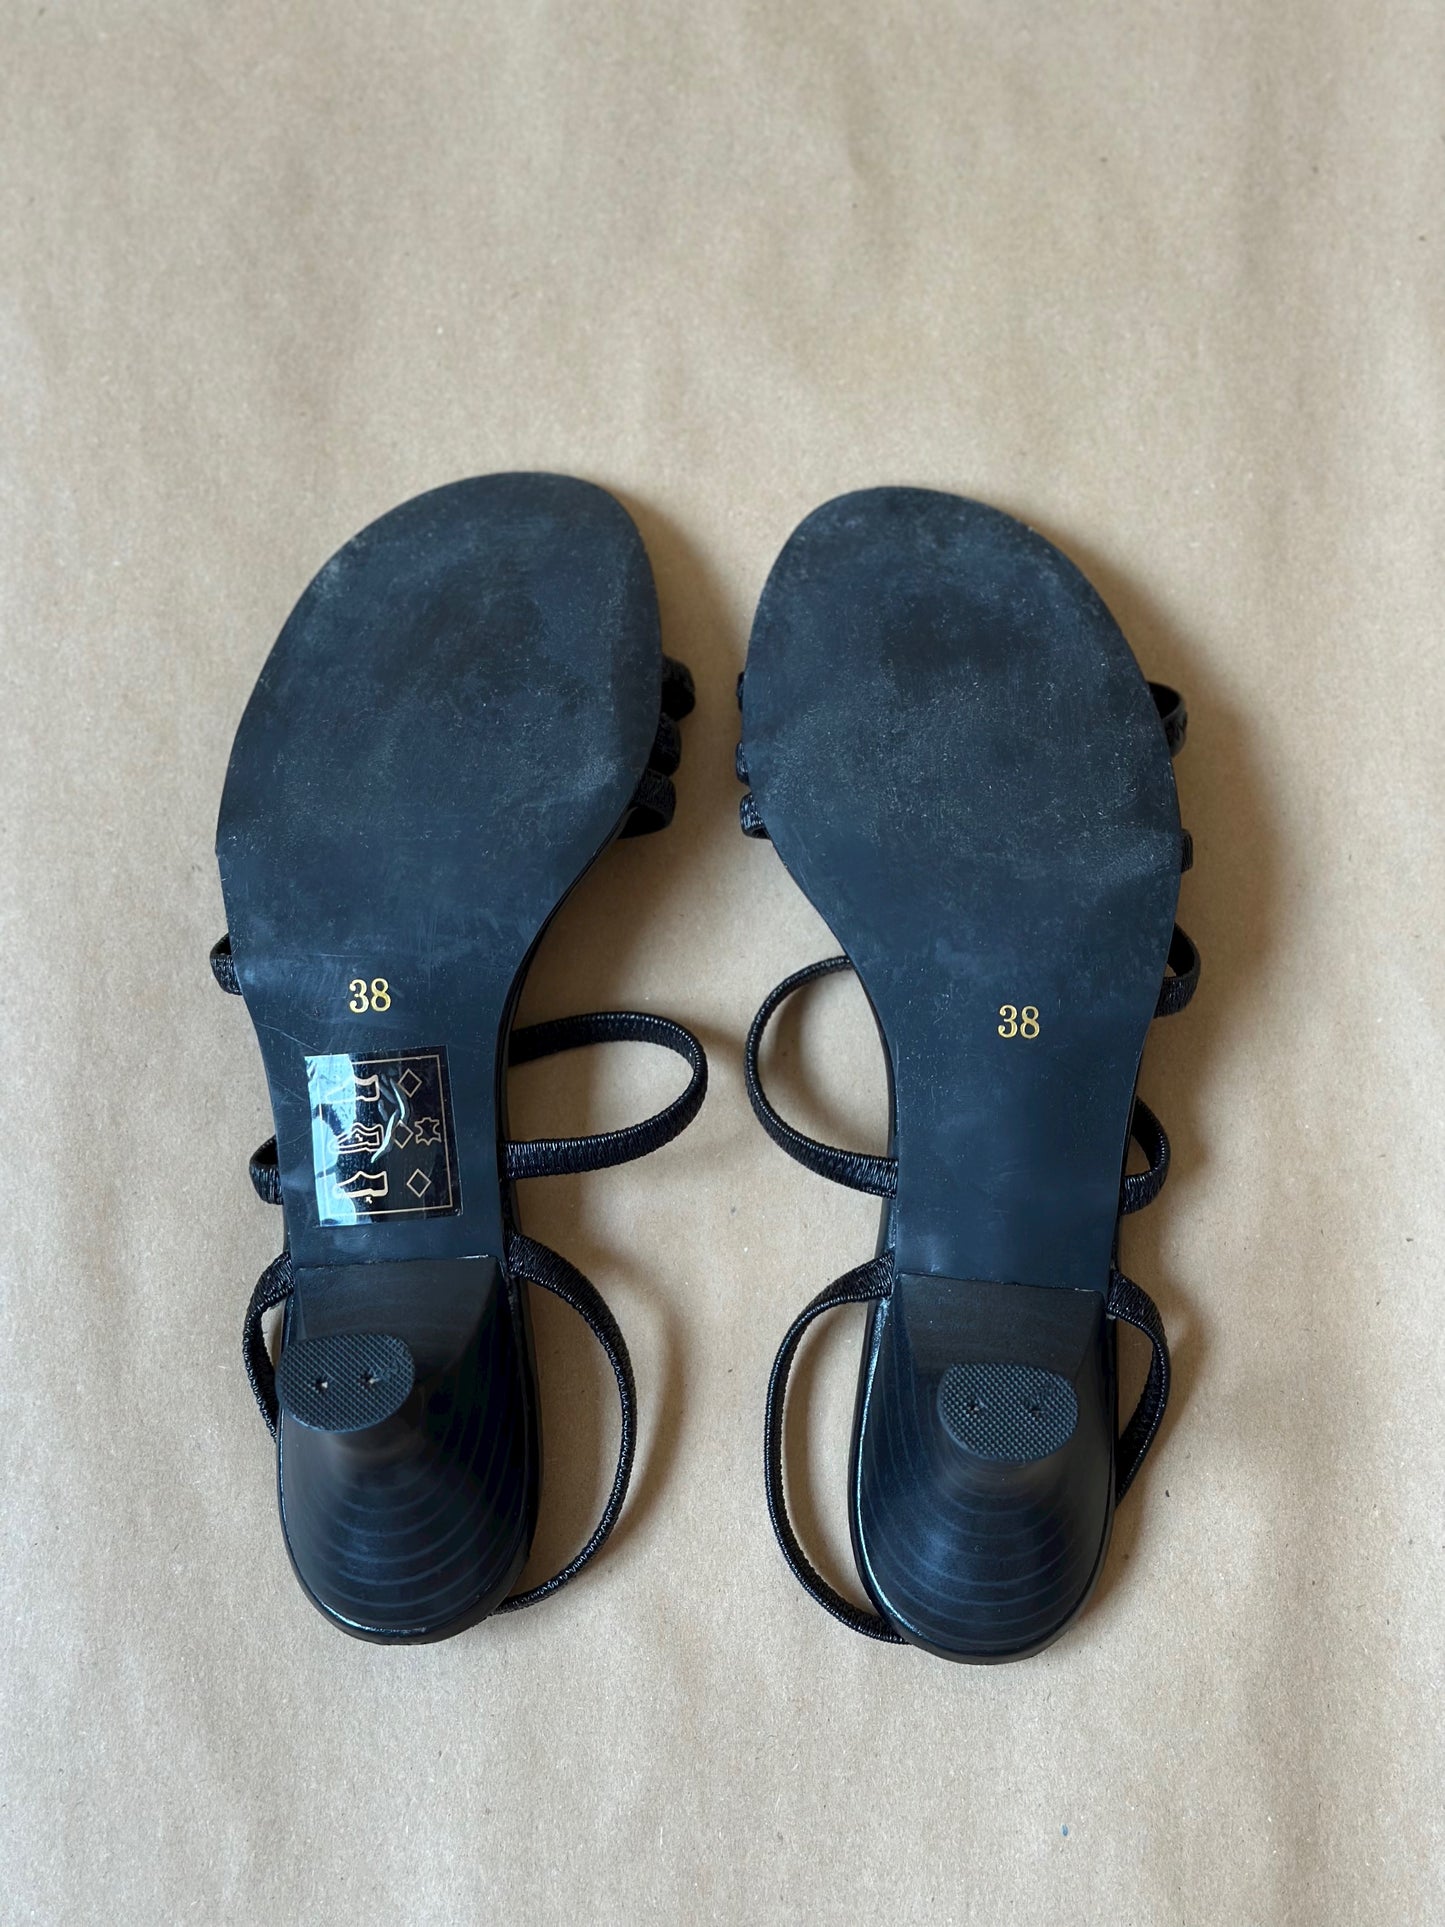 Vintage Black Strappy Sandals